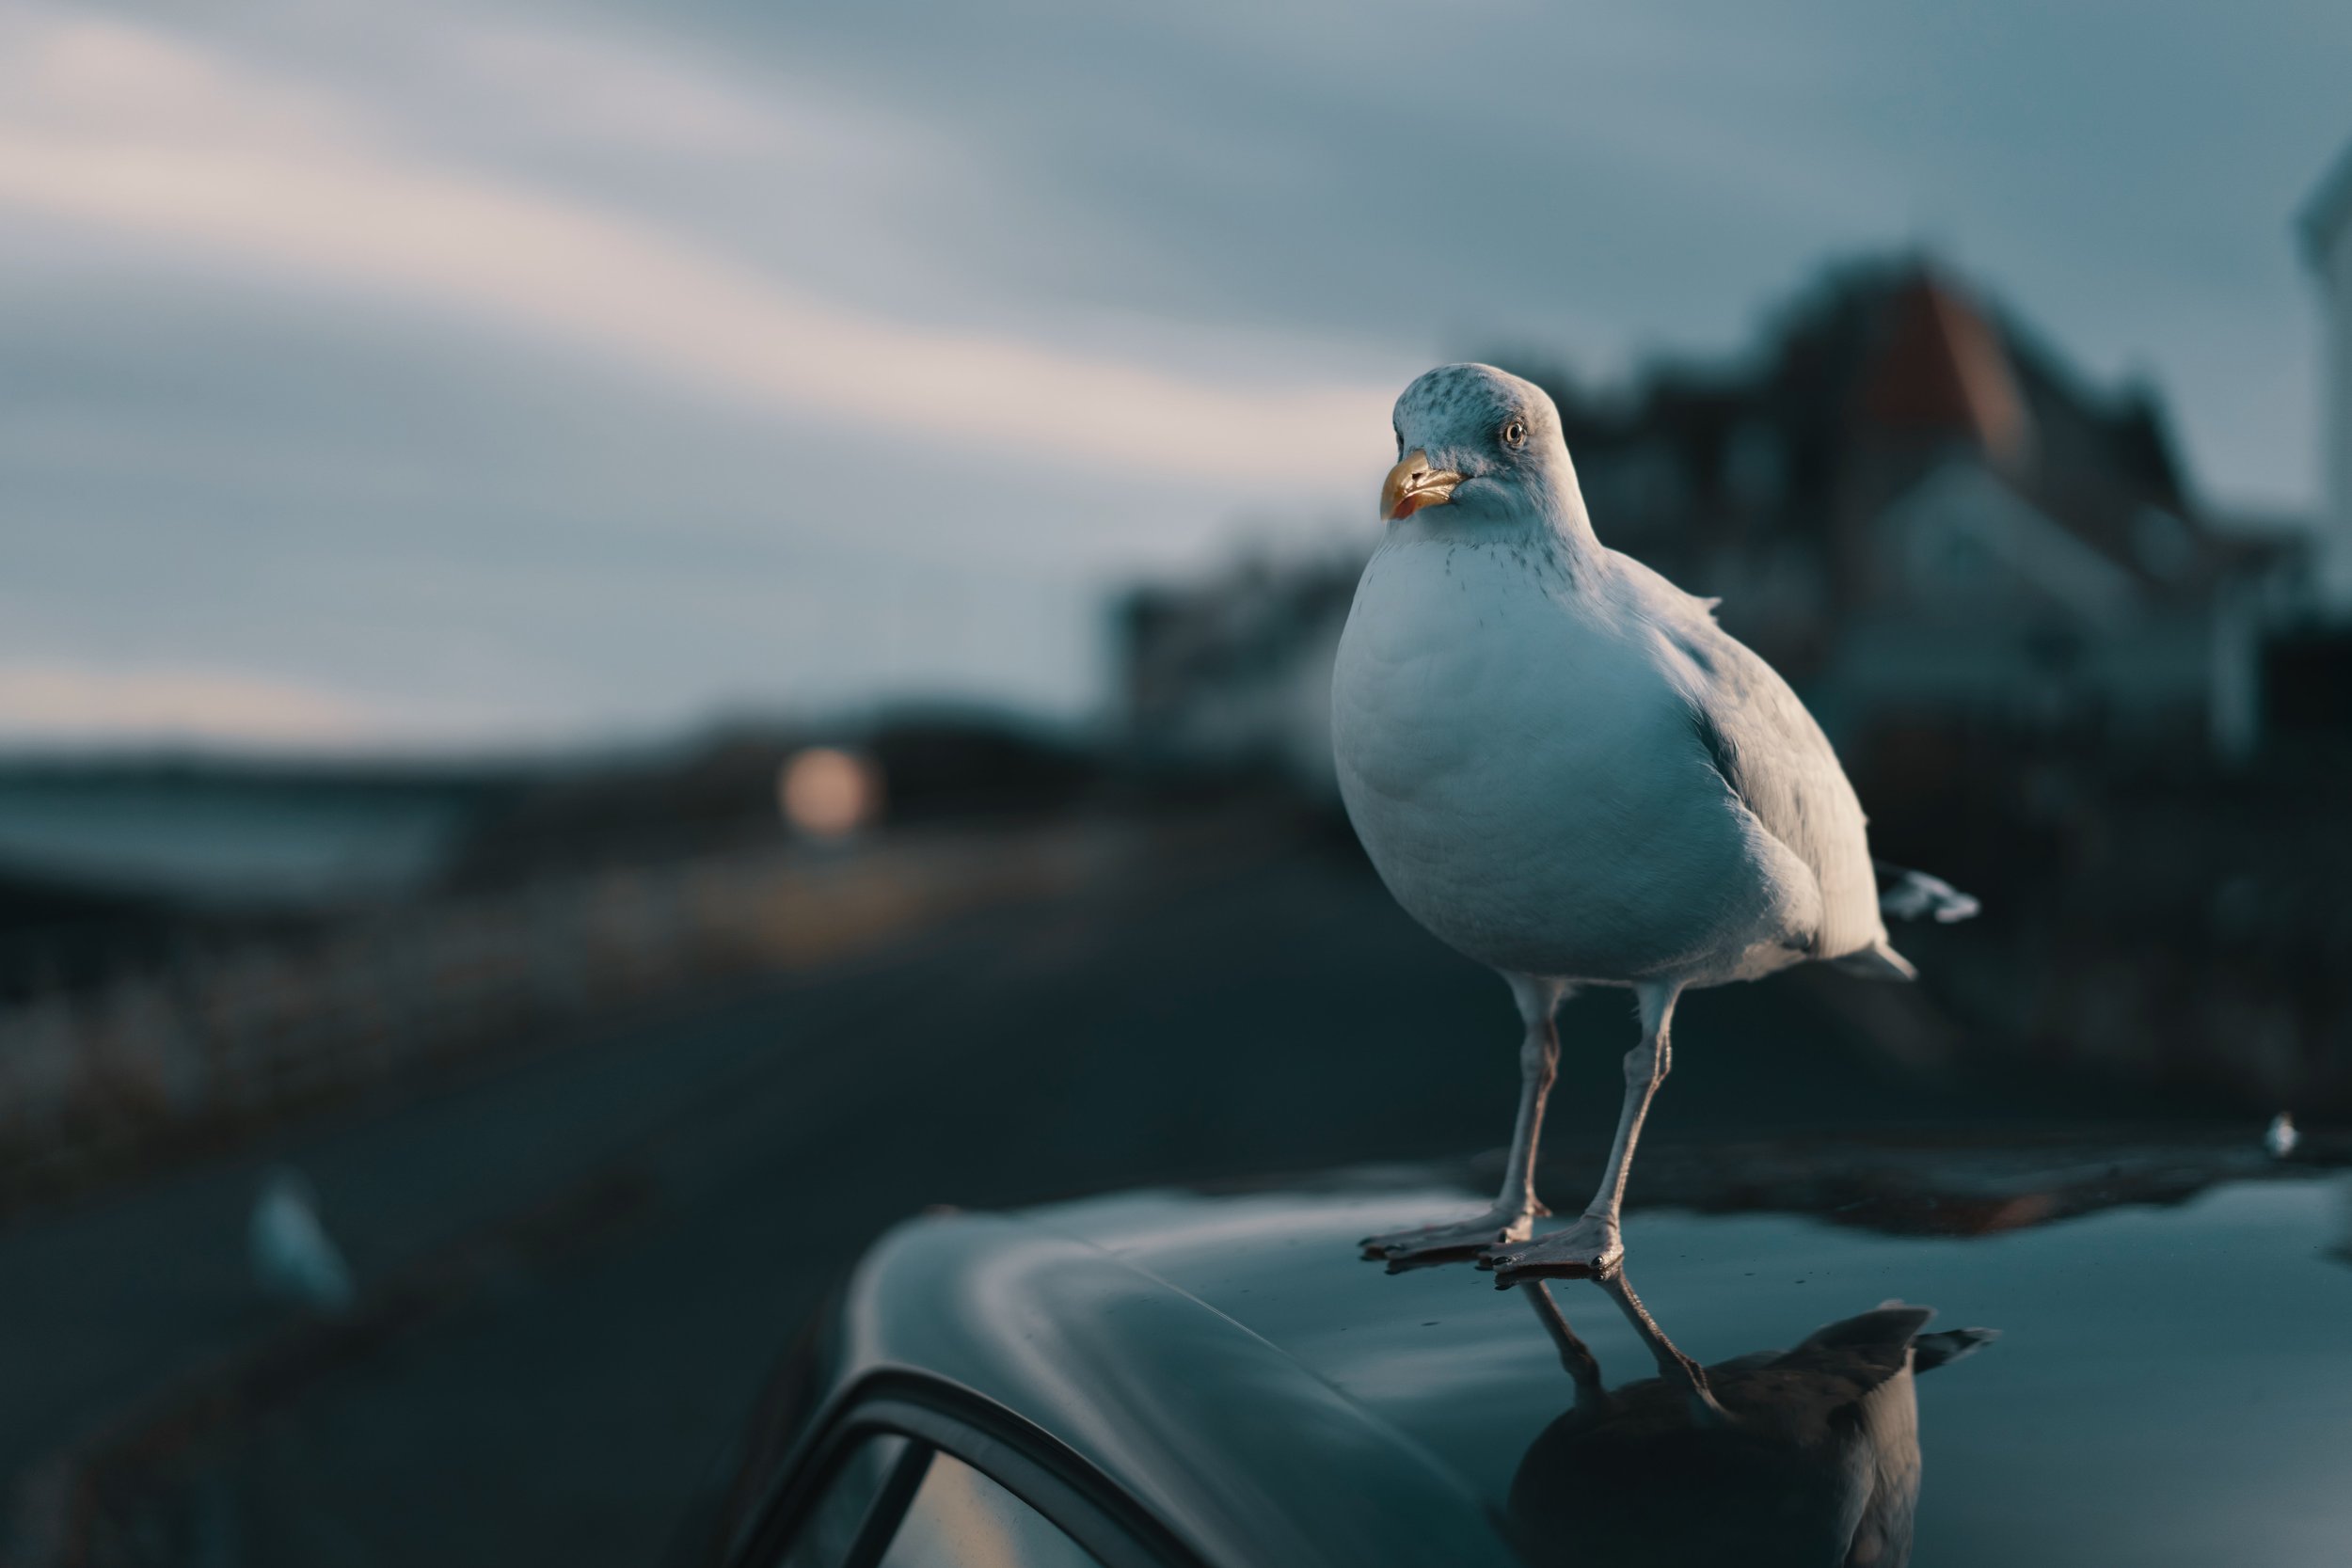 Taking bird. Птица над машиной. Птички и автомобиль. Обои для рабочего стола птичка на машине. Фотоманипуляция автомобиль птица.